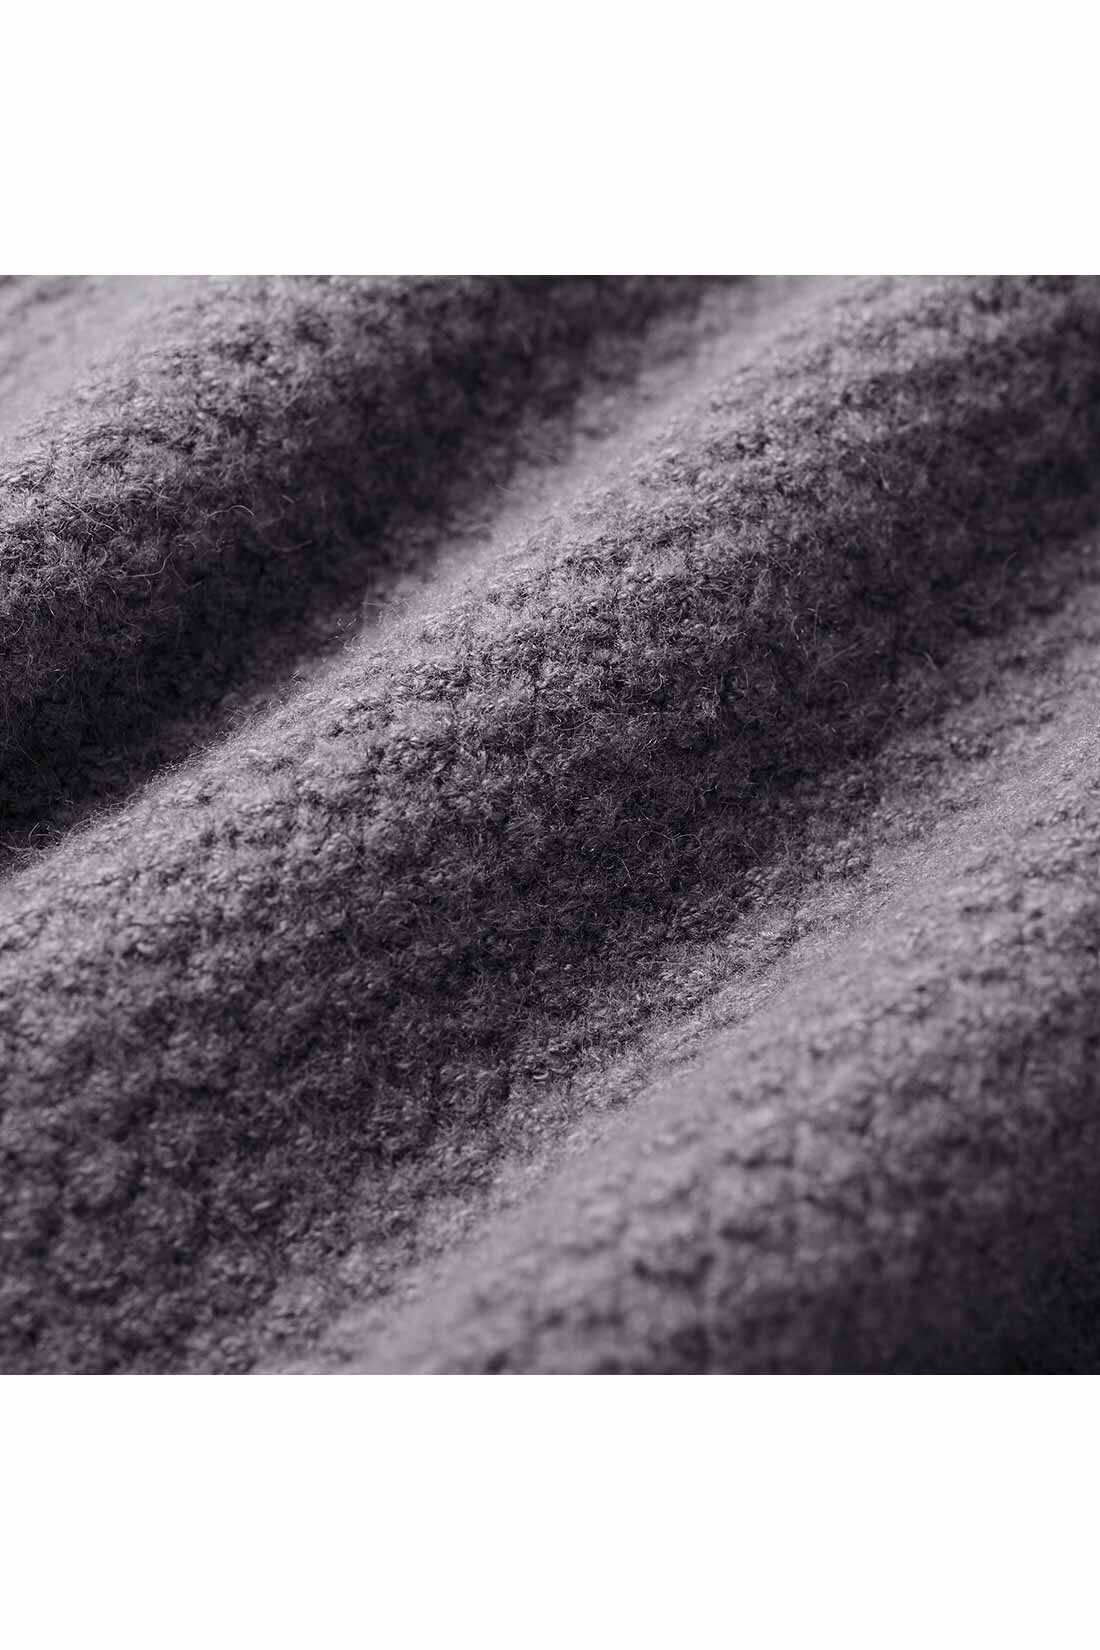 THREE FIFTY STANDARD|THREE FIFTY STANDARD かのこ編みセーター〈ブルーグレー〉|撚糸（ねんし）を起毛させ膨らみを出した糸で、かのこ編みに仕上げました。